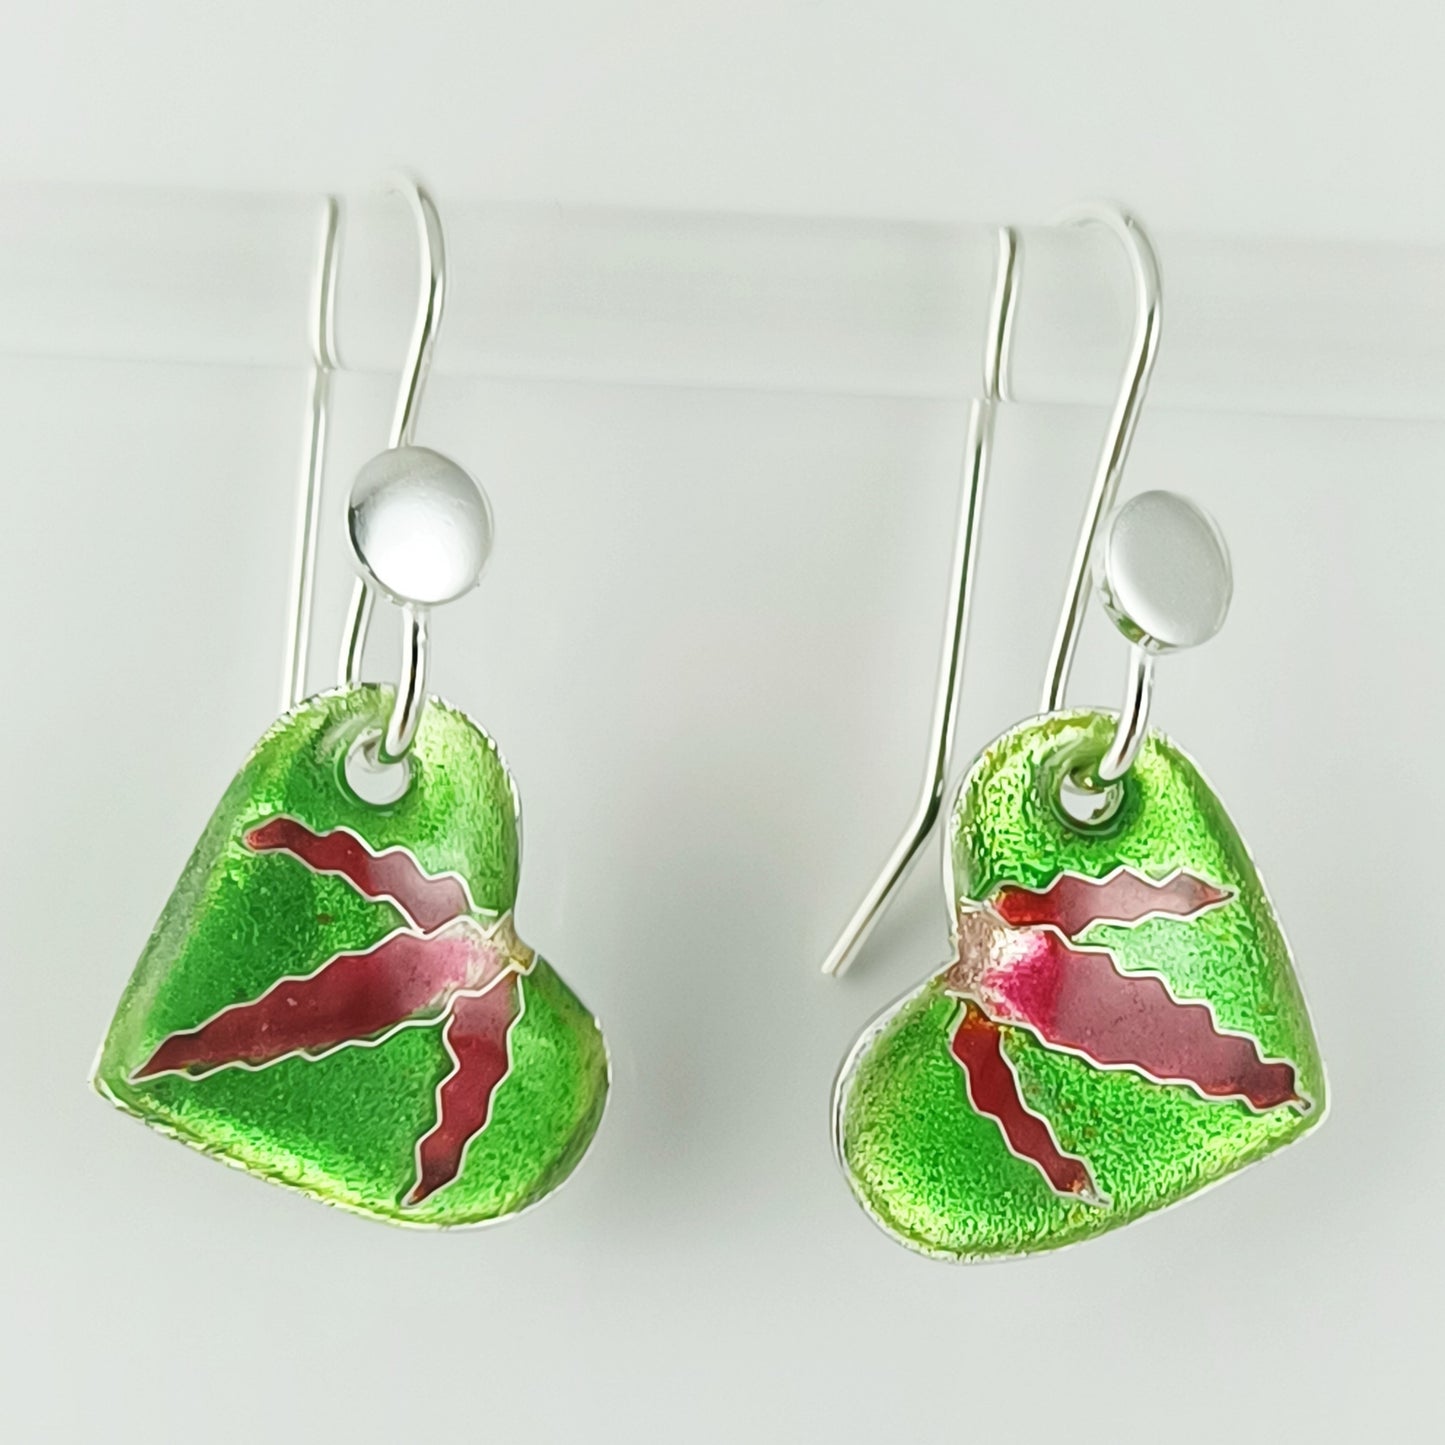 Green Heart Earrings Cloisonne Enamels on Fine Silver (999), Handmade in Australia